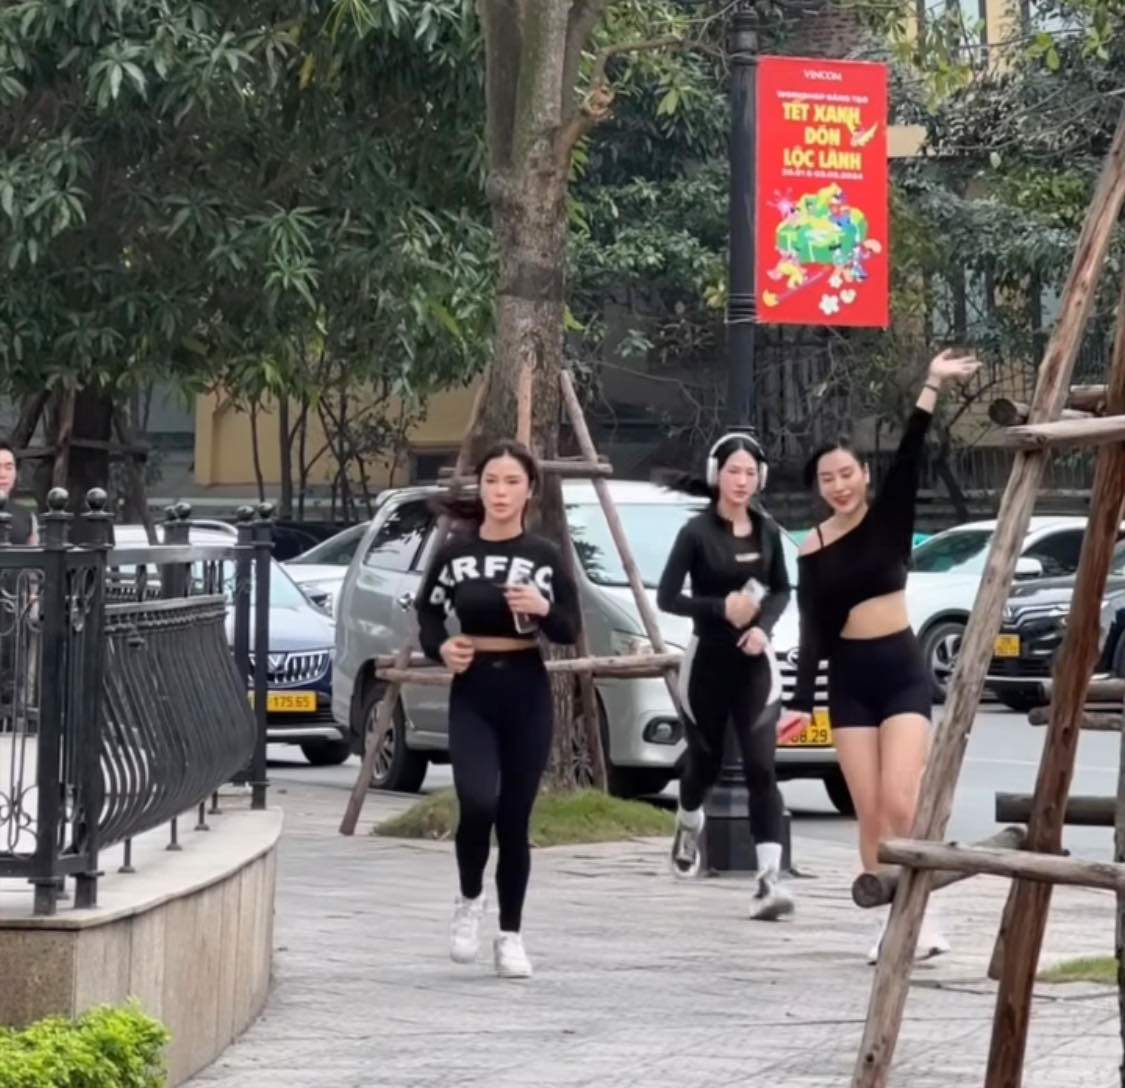 Nhóm 3 cô gái mặc đồ gym tập squat, chạy bộ trên phố gây chú ý - 1